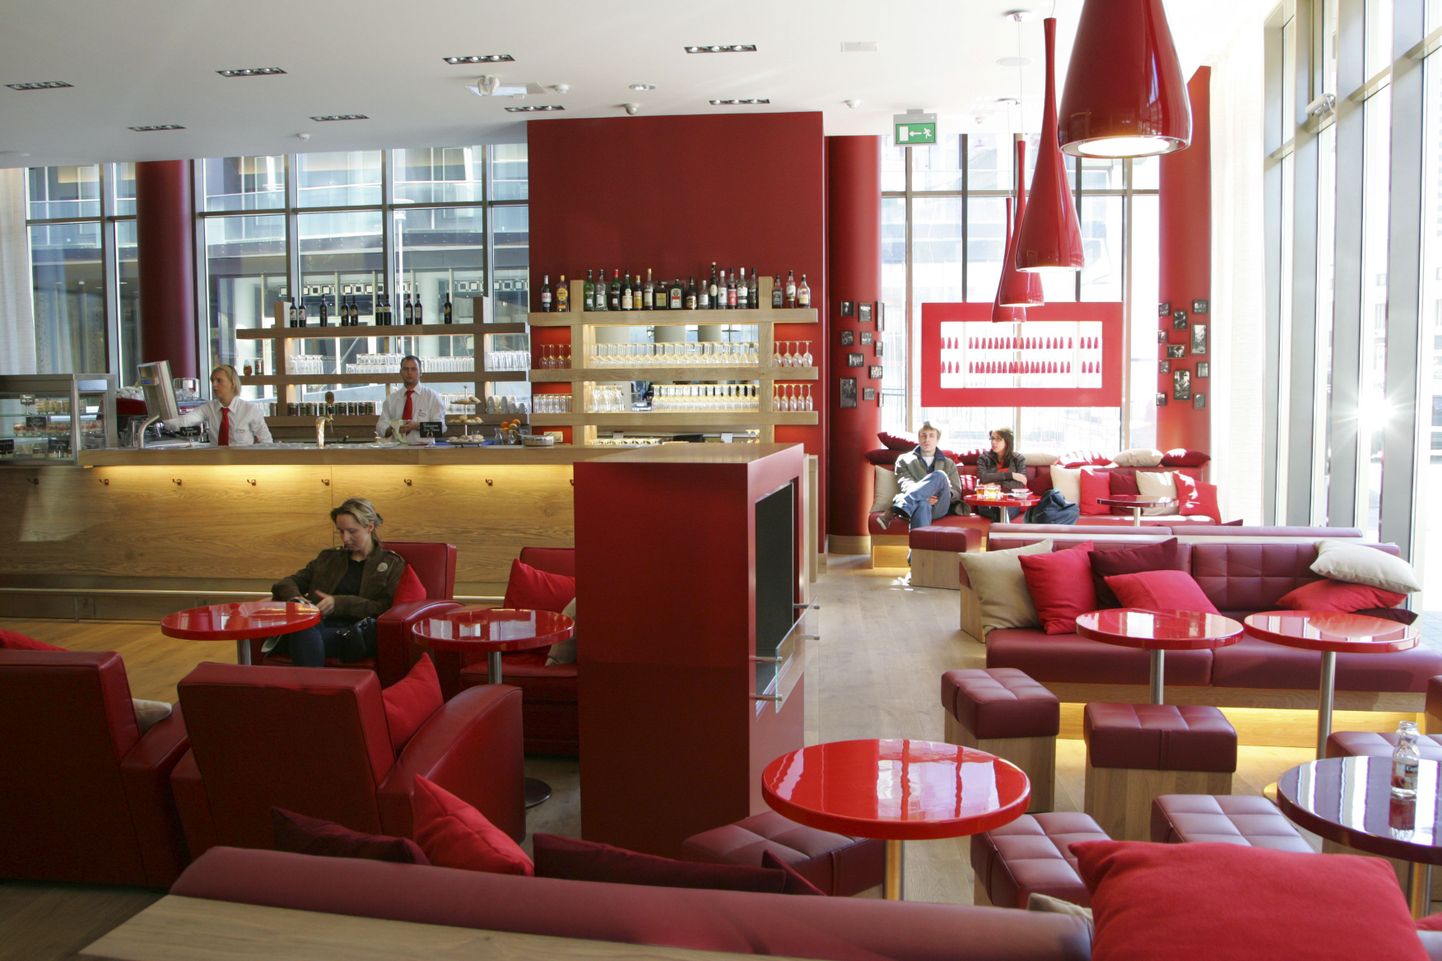 Ресторан Vapiano в Таллинне был замечен в округлении цен в евро не в пользу клиента.